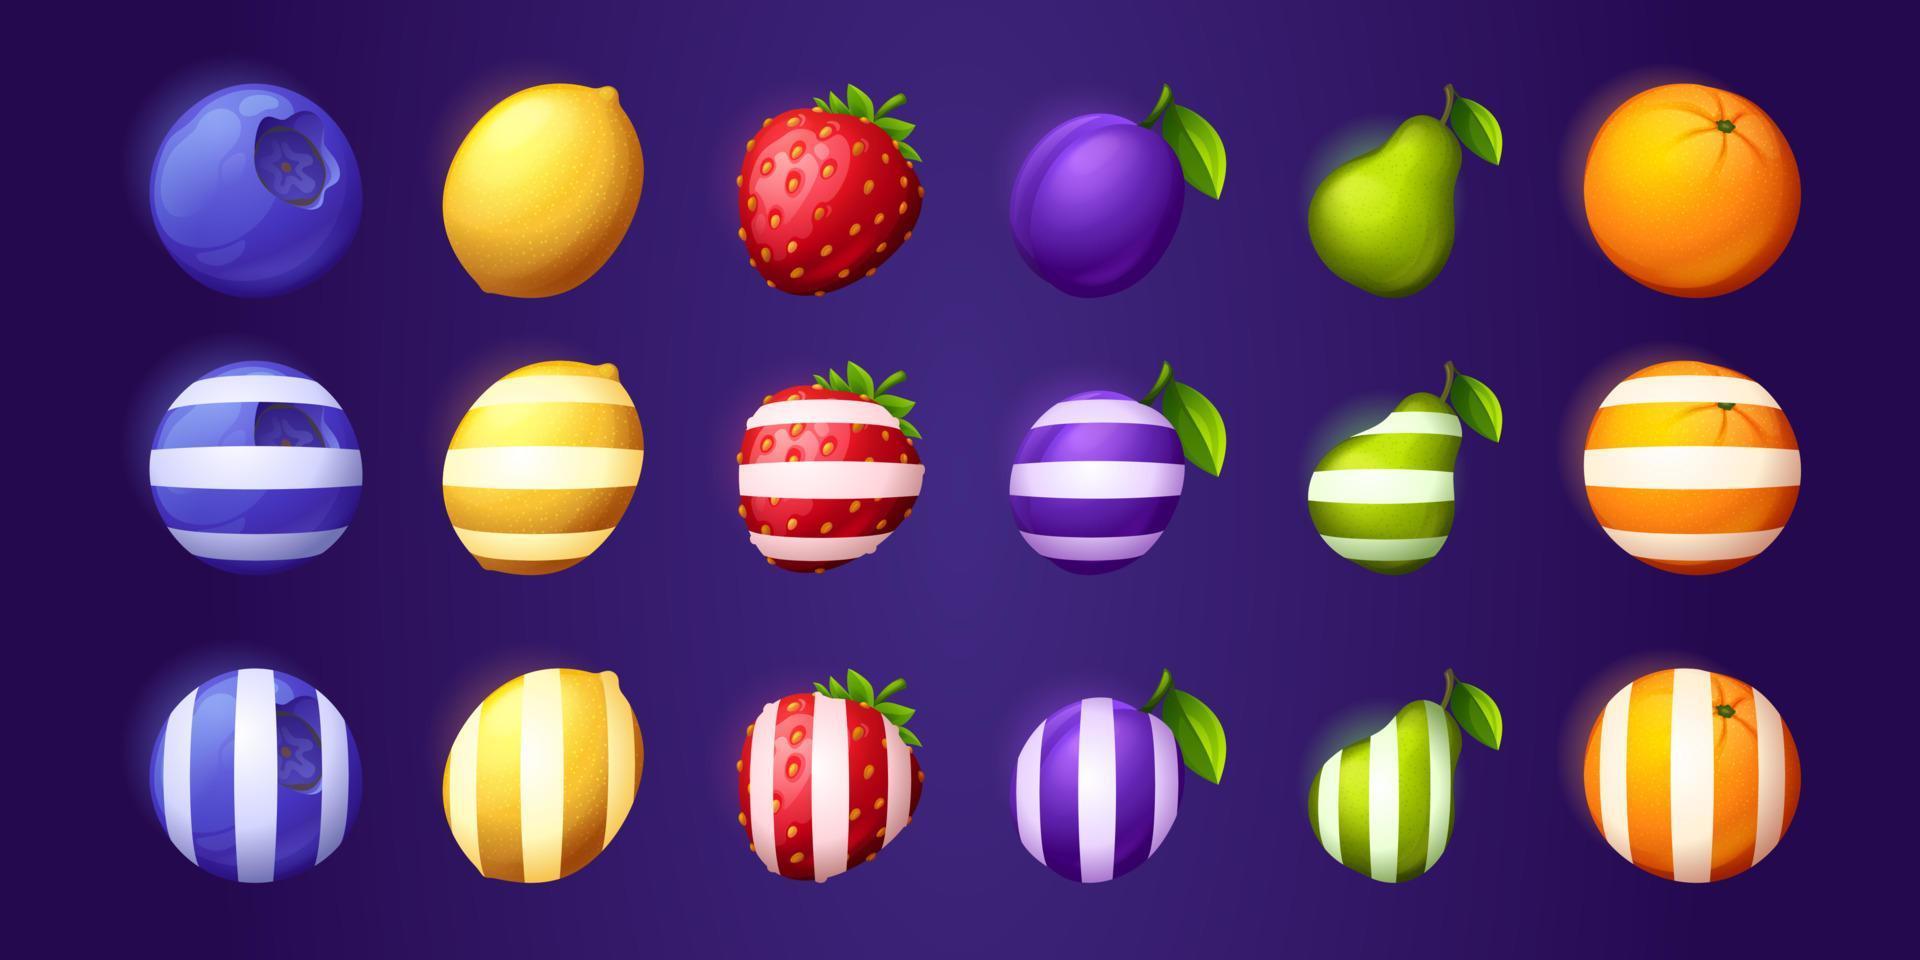 iconos de frutas y bayas para juegos móviles ui vector